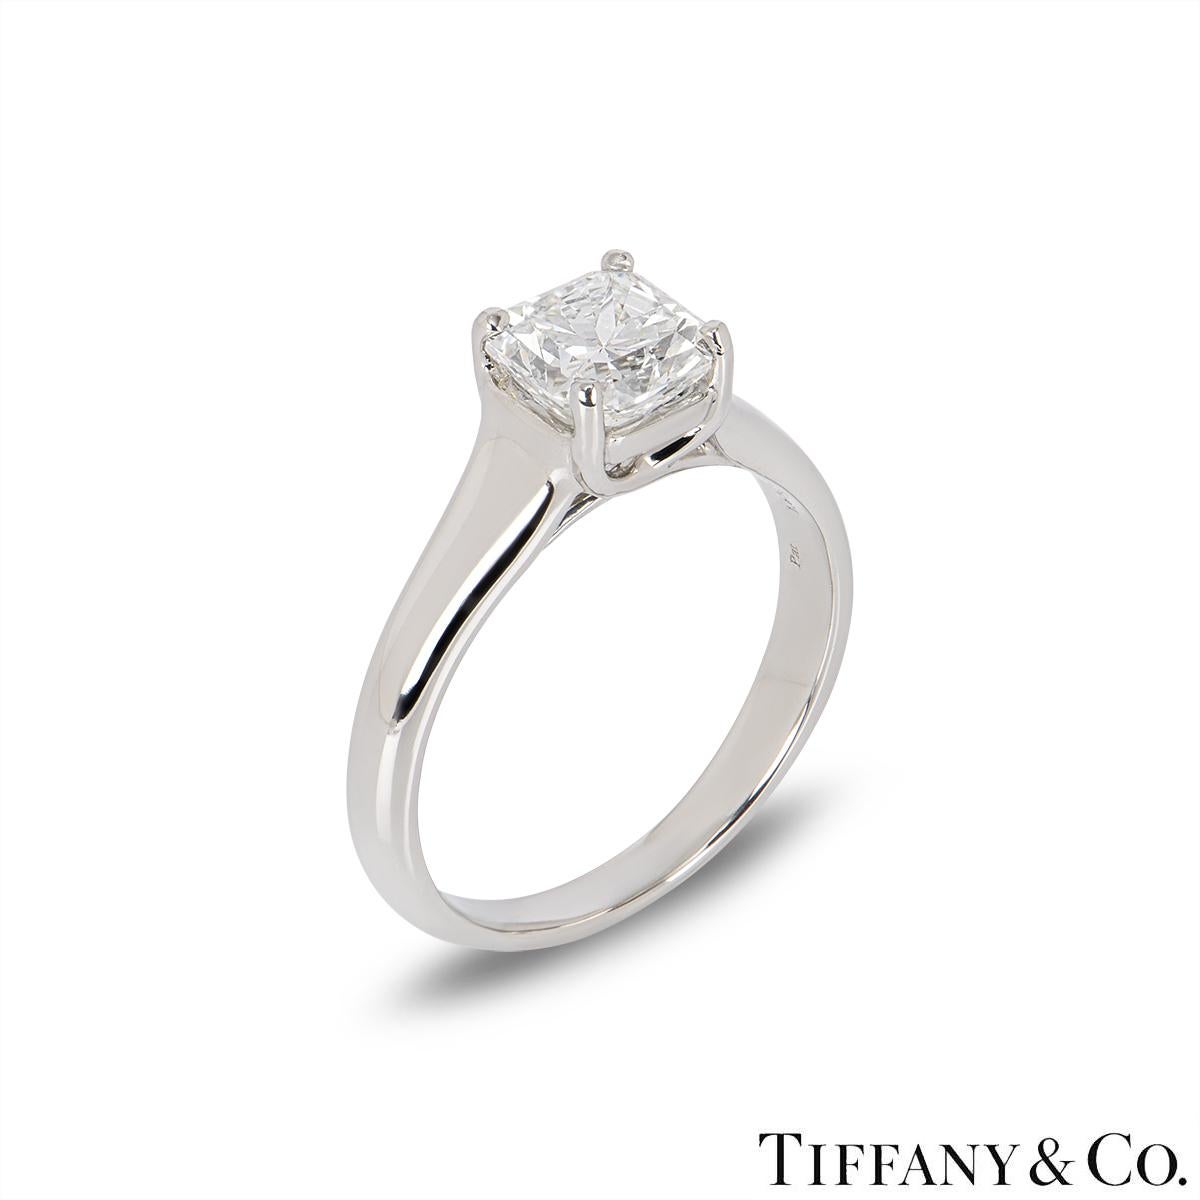 Une superbe bague en platine à diamants Tiffany & Co. de la collection Lucida. La bague comprend un diamant de taille Lucida dans une monture à 4 griffes, d'un poids de 1,61ct, de couleur H et de pureté IF (Internally Flawless). La bague a un poids